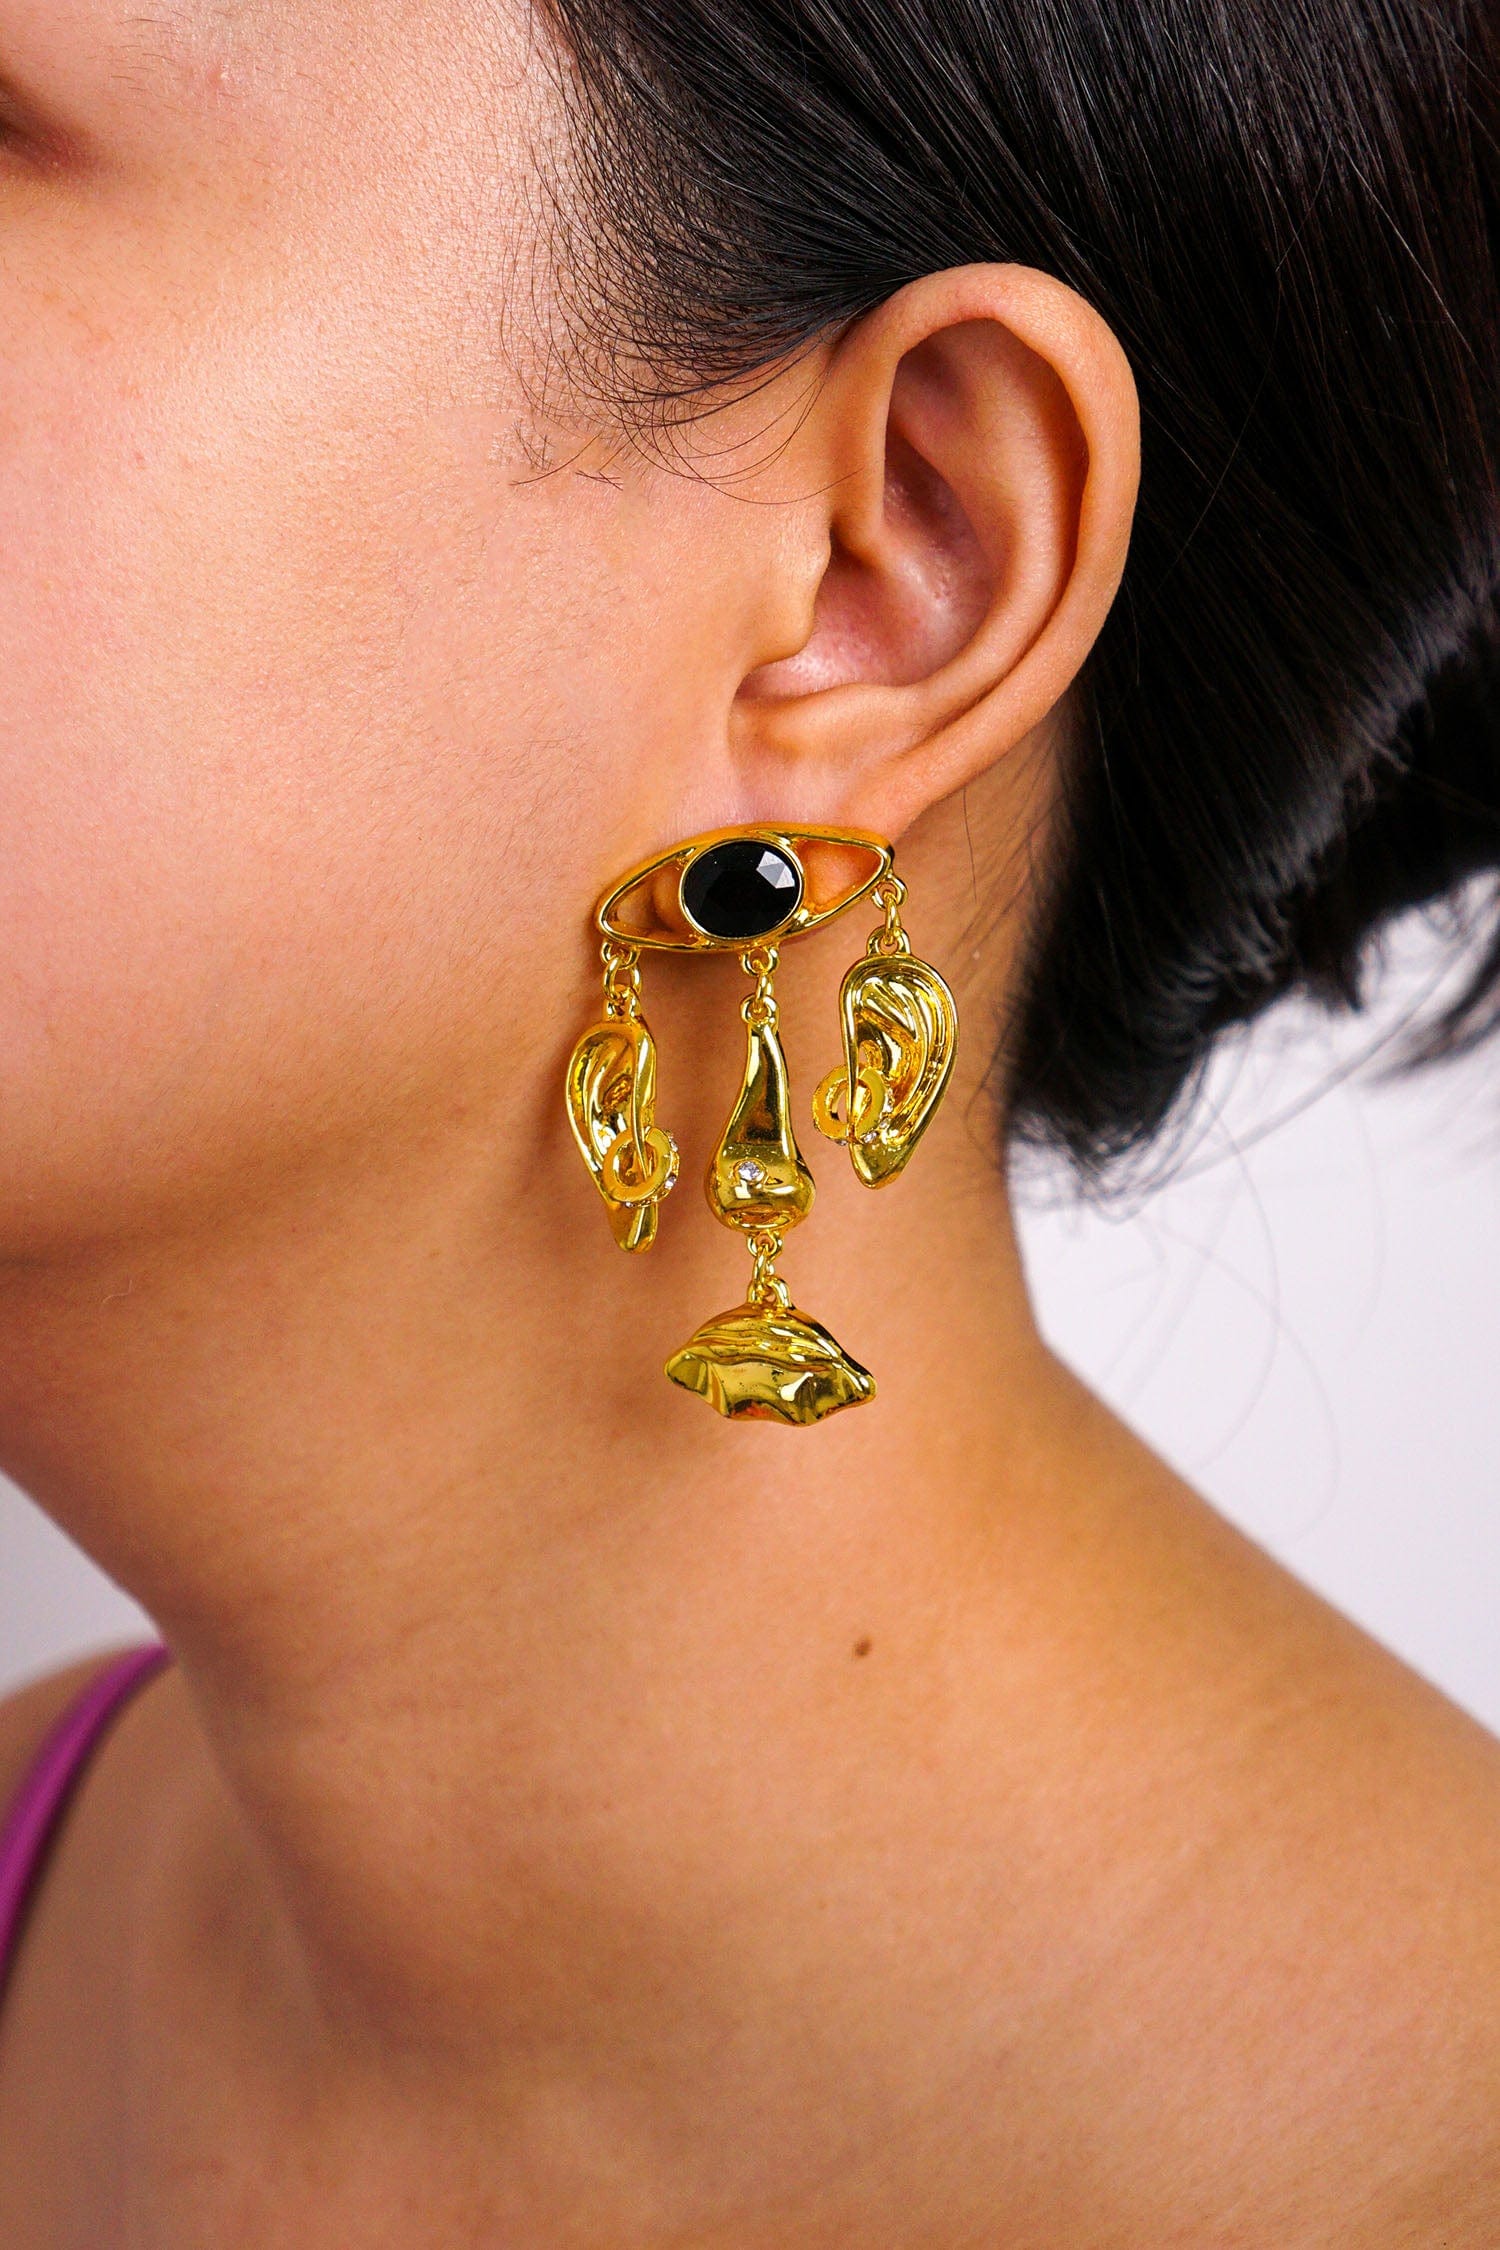 DCD EARRINGS Gold Geometric Eyes Ears Lips Earrings